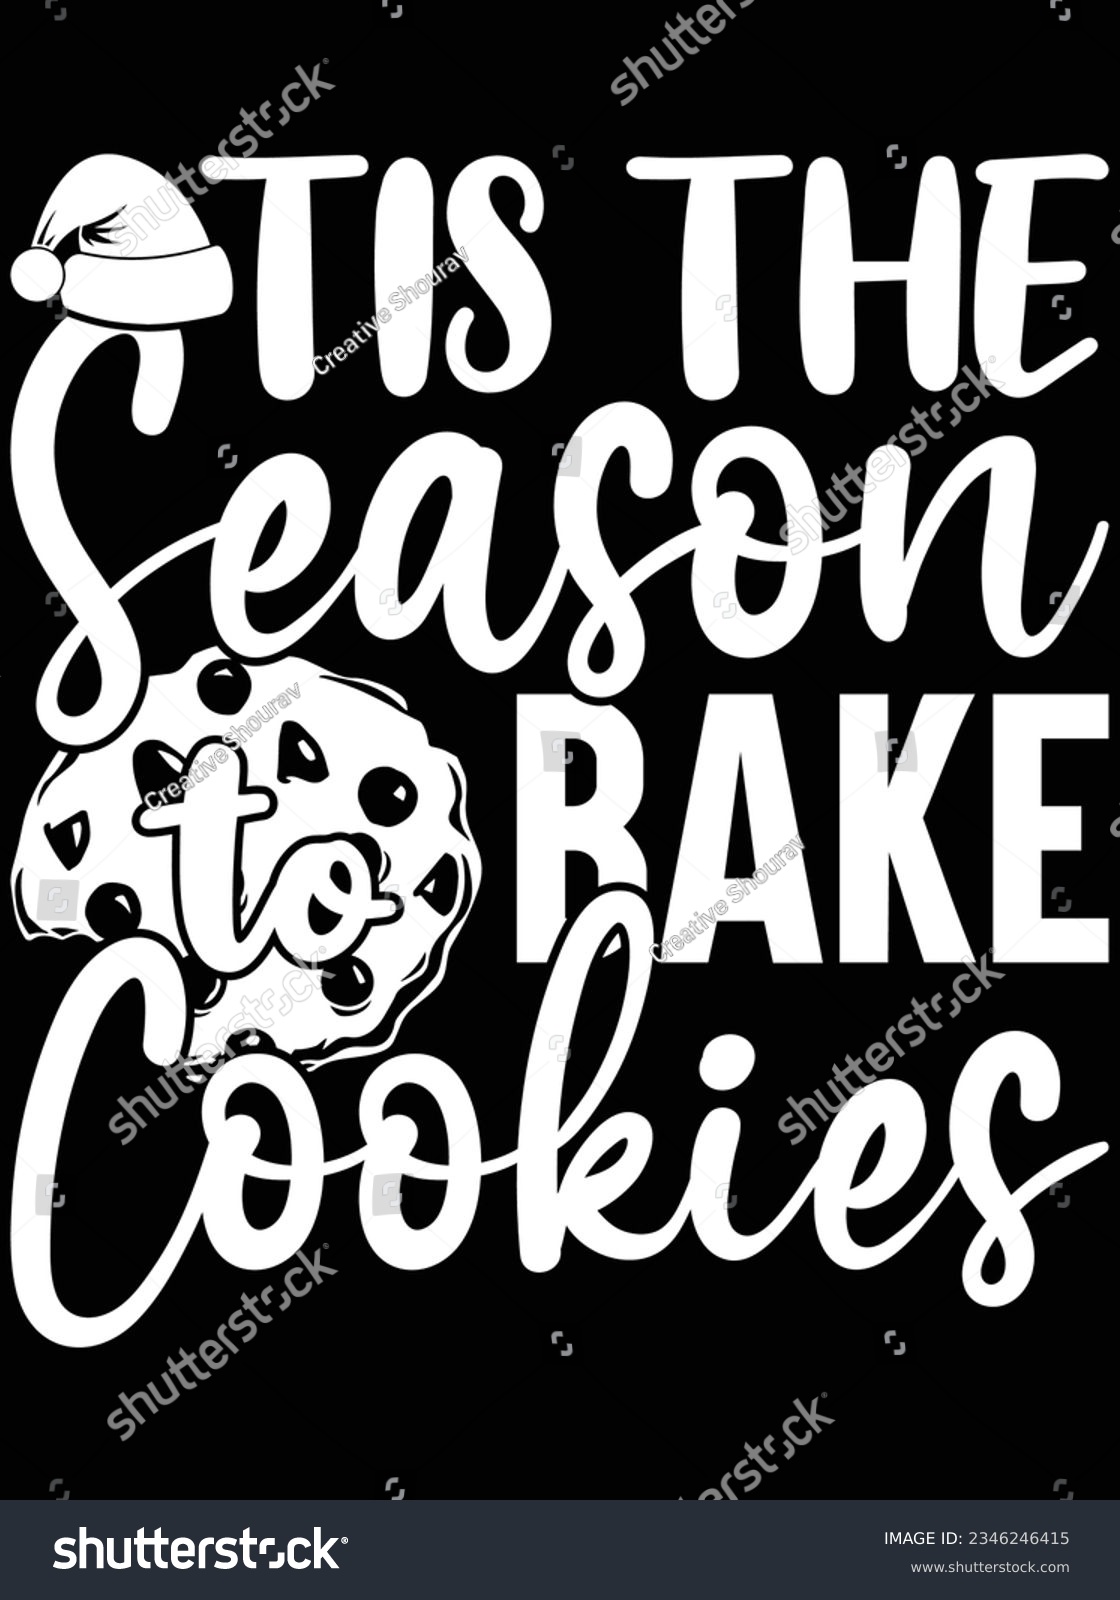 SVG of Tis the season bake cookies vector art design, eps file. design file for t-shirt. SVG, EPS cuttable design file svg